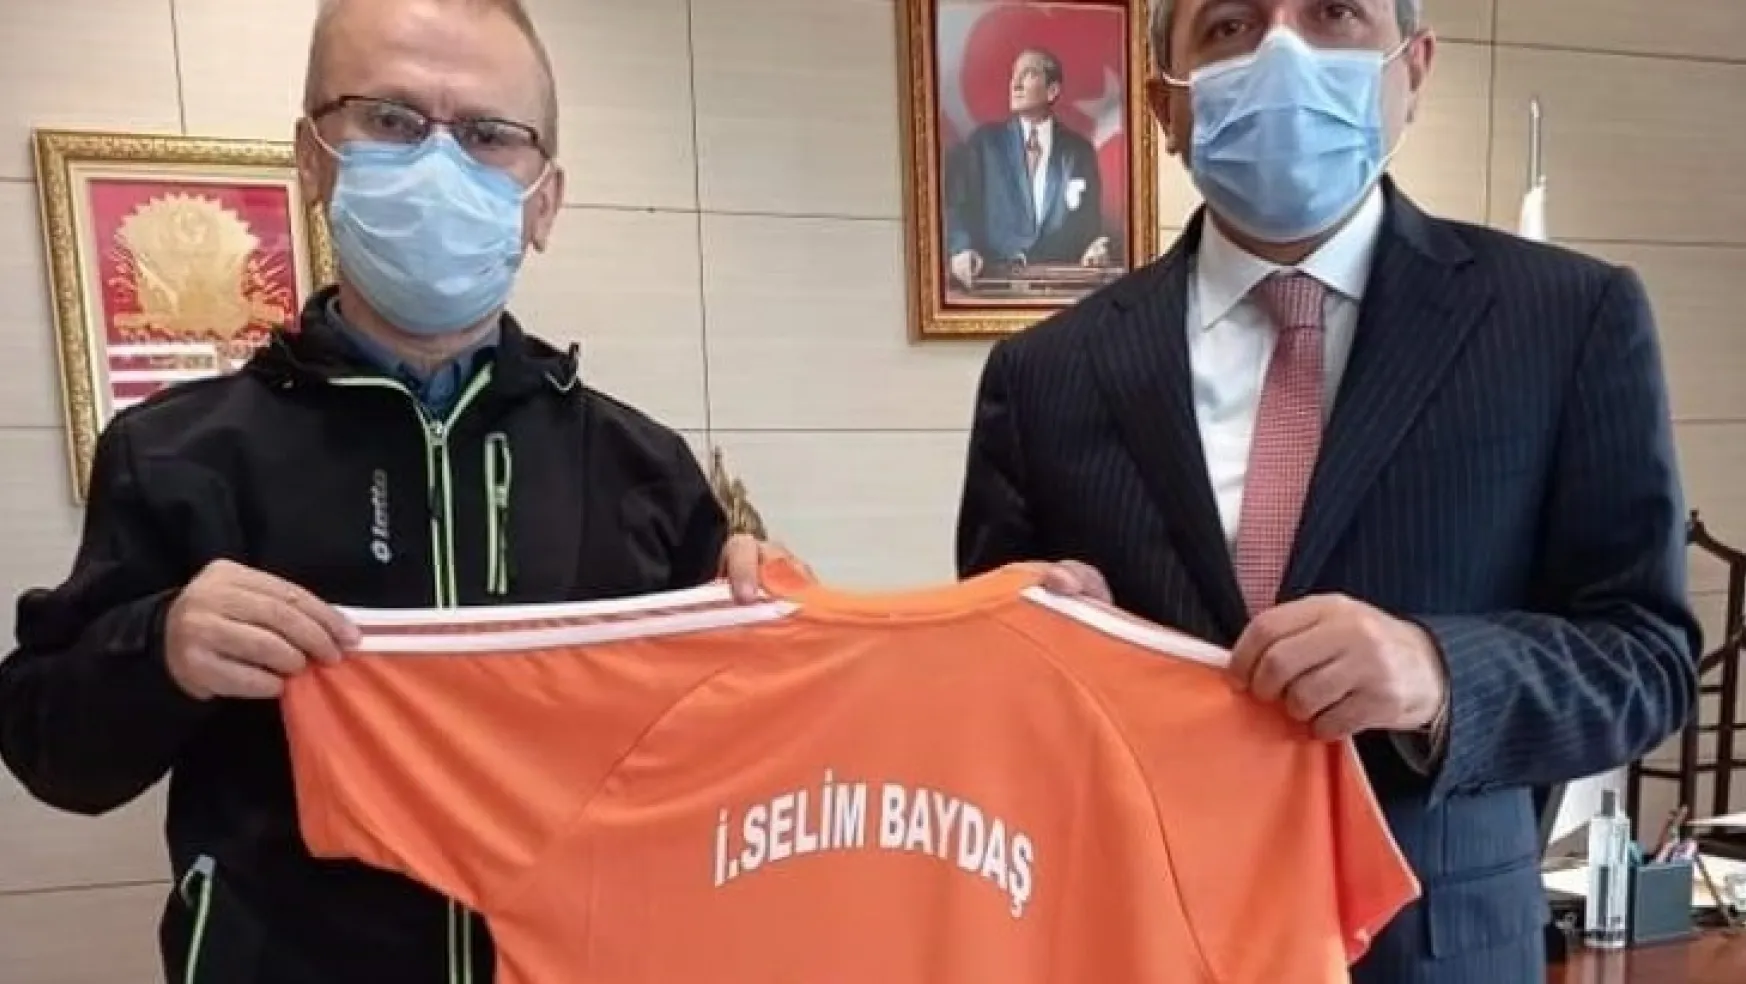 Yeşilyurt Belediyesi Görme Engelliler Spor Kulübü Yönetimi, Bakan Yardımcısı Baydaş'ı Ziyaret Etti